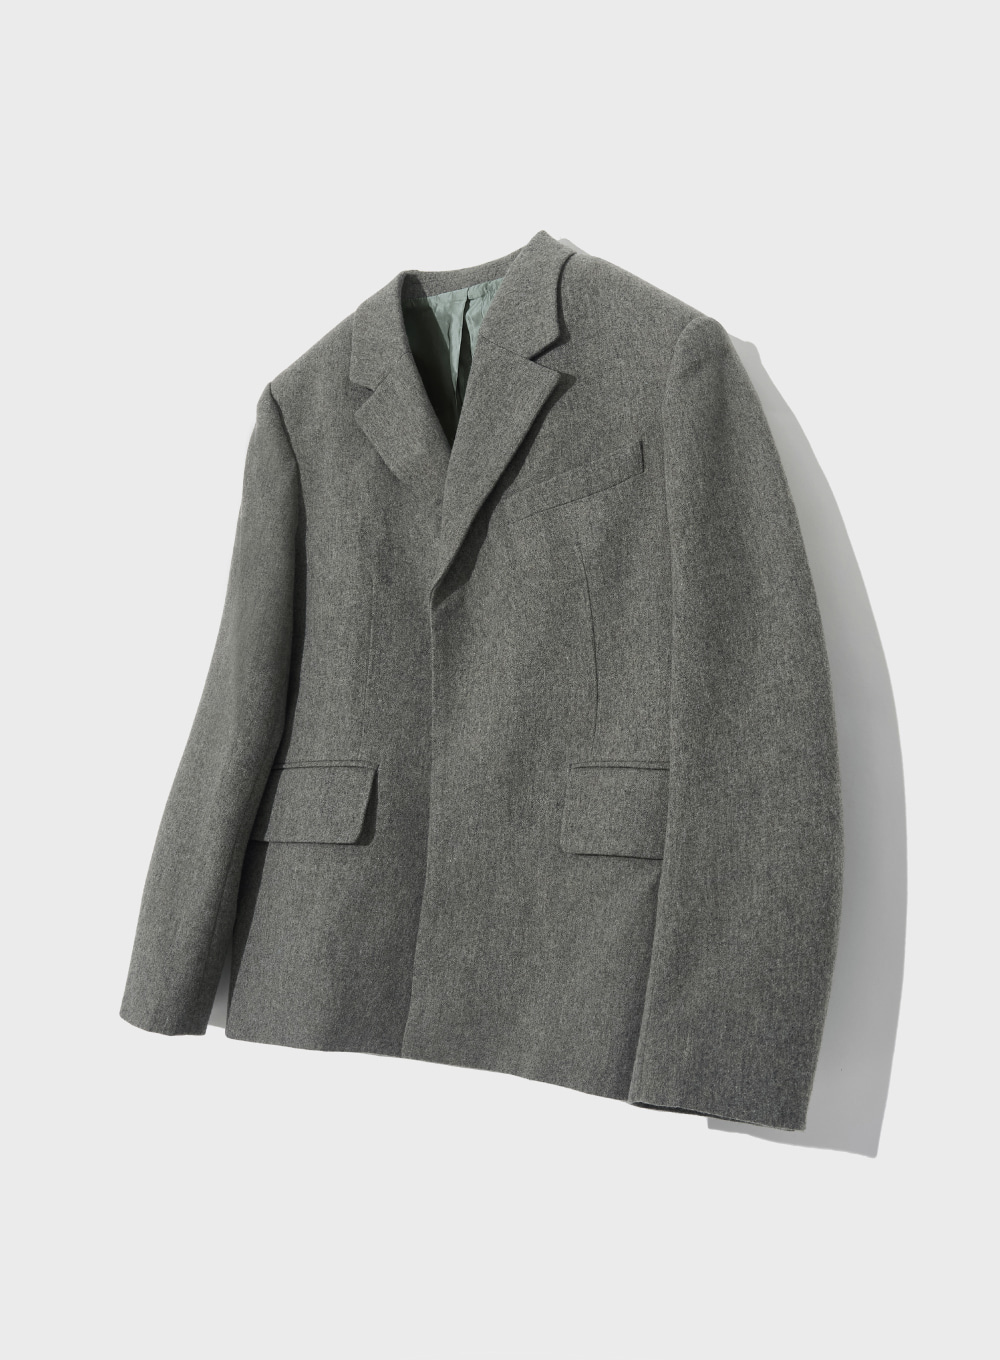 [10월 9일 예약배송]Modern Classic 2-Button Wool Jacket - Deep Gray